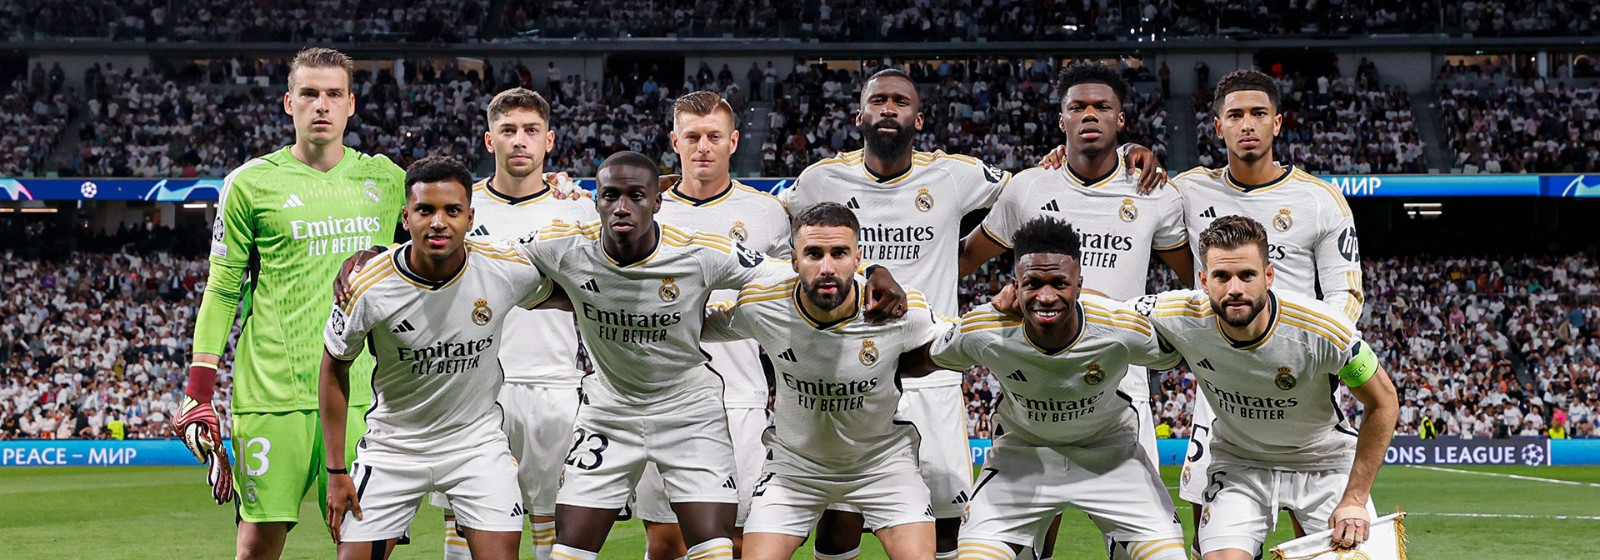 Real Madrid frente a la oportunidad de su título 15 en Champions League